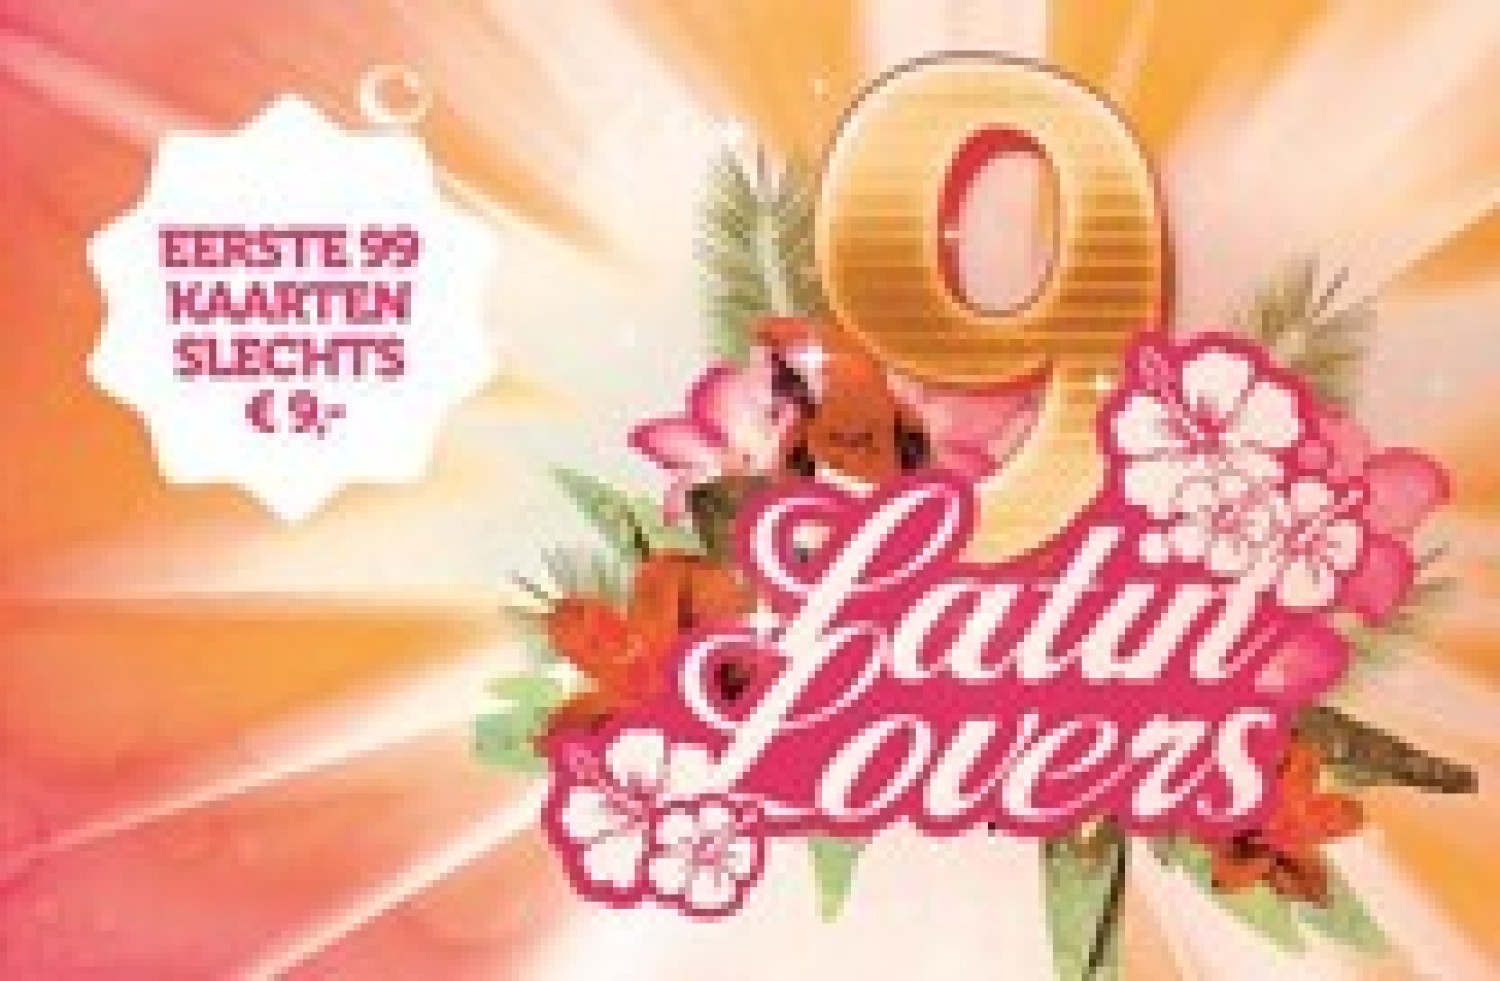 Party nieuws: Latin Lovers viert zaterdag 9 jarig bestaan